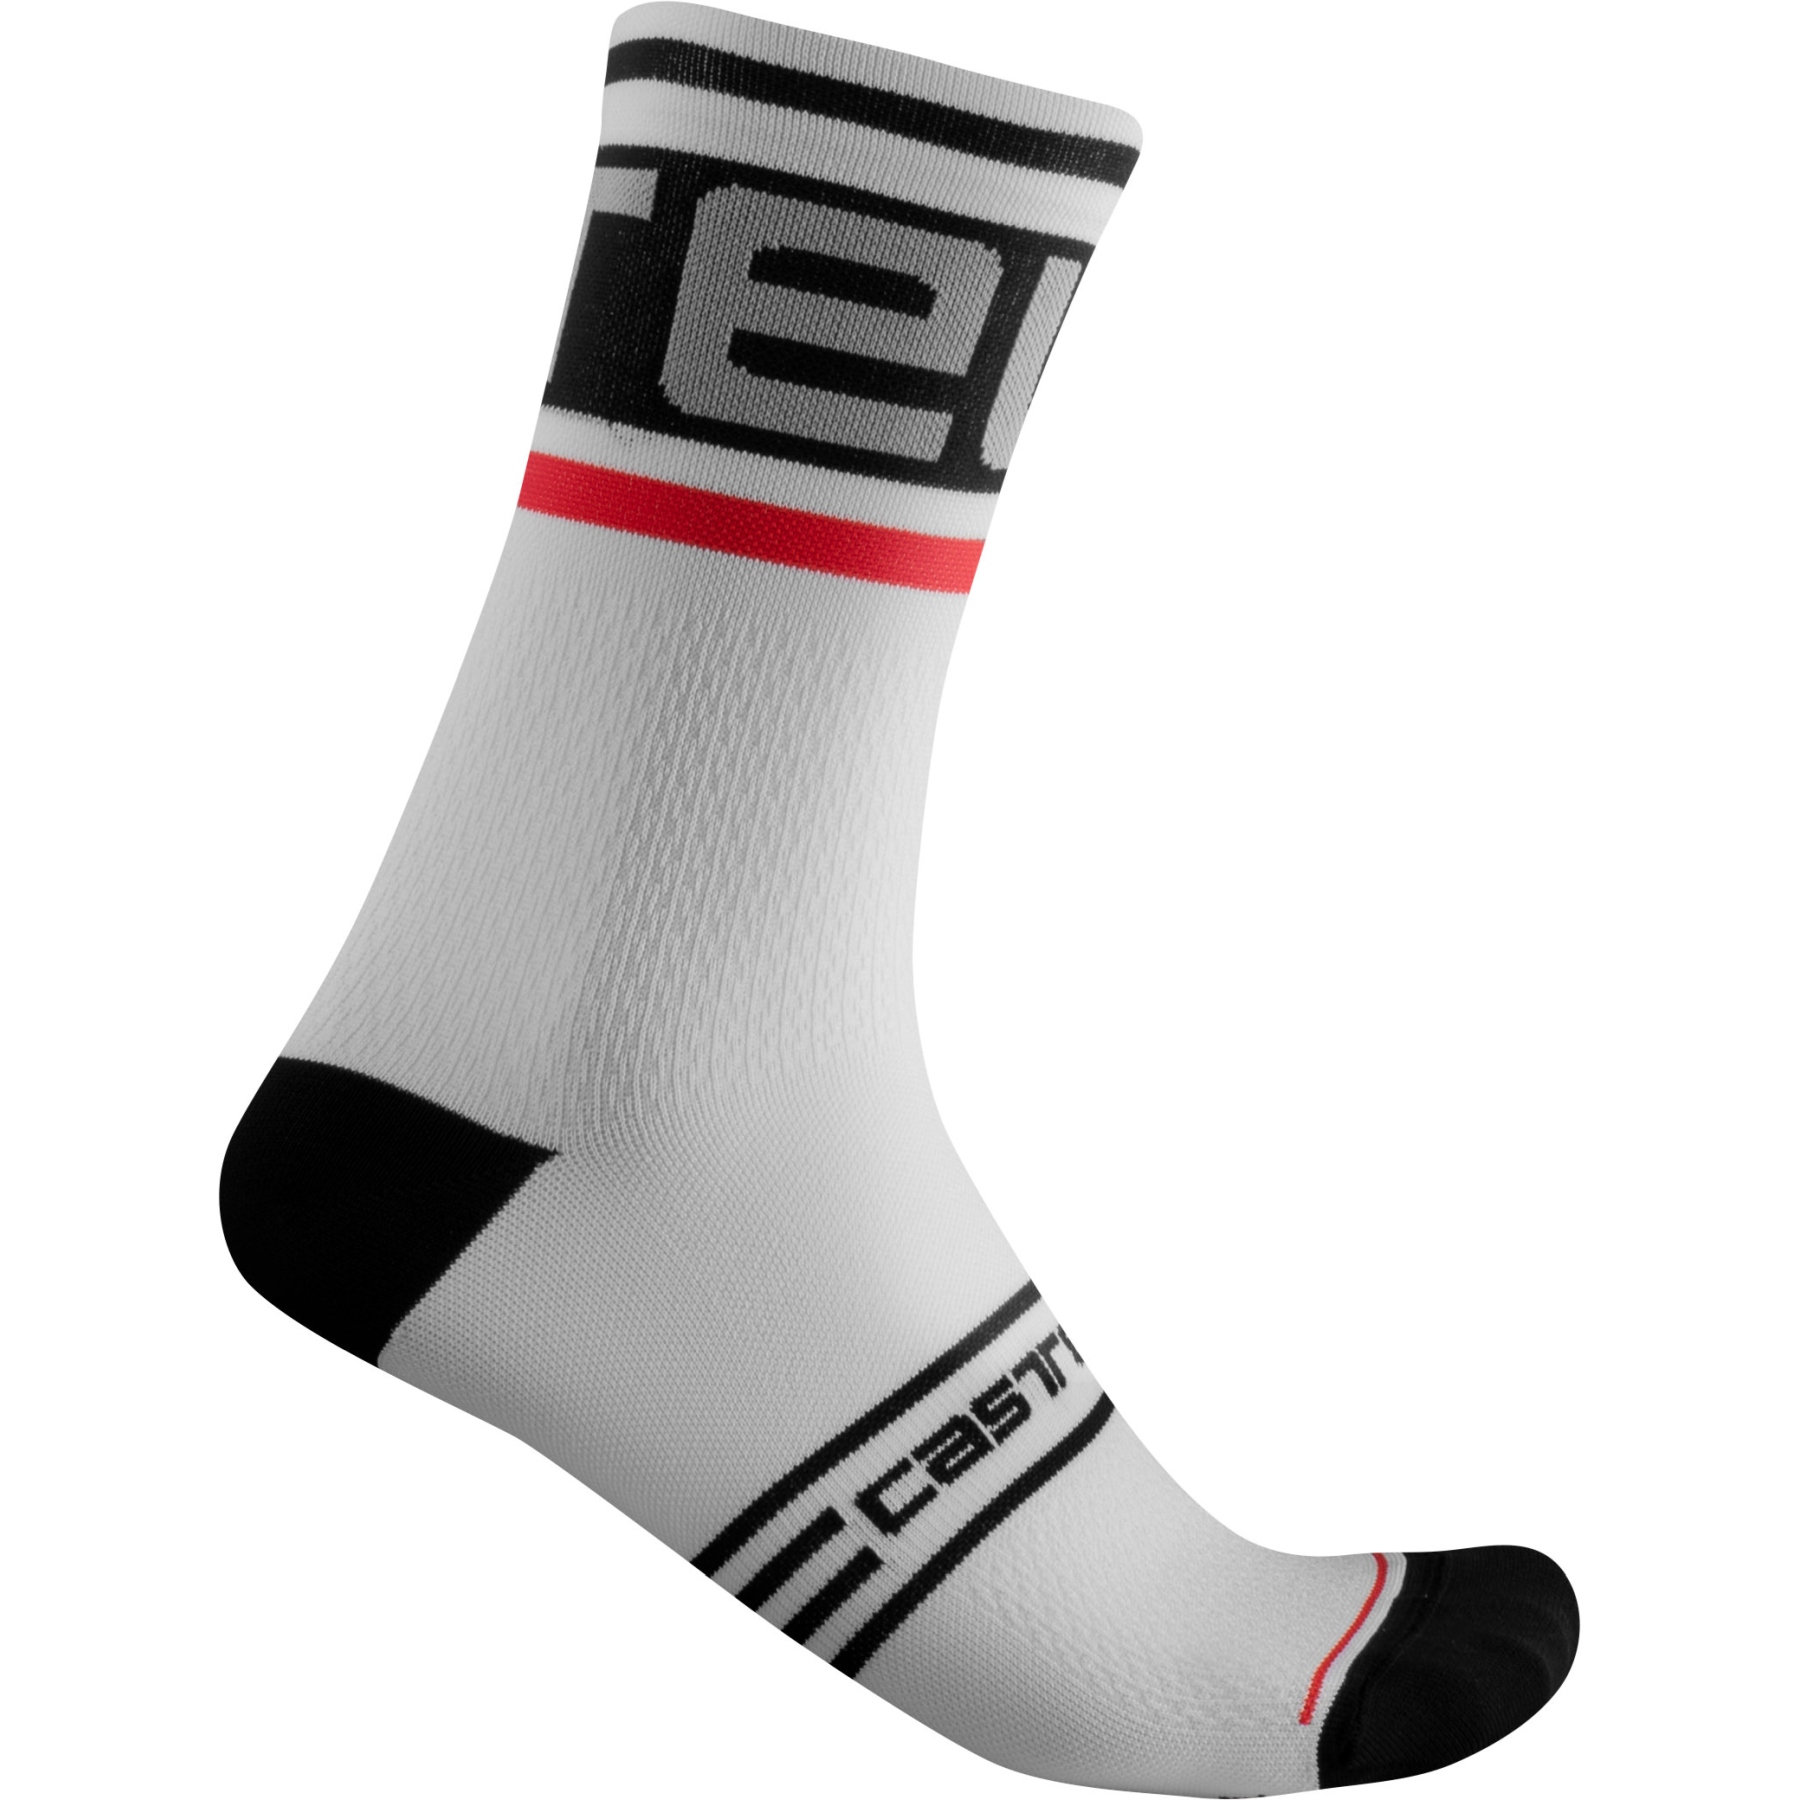 Produktbild von Castelli Prologo 15 Socken - schwarz/weiß 101